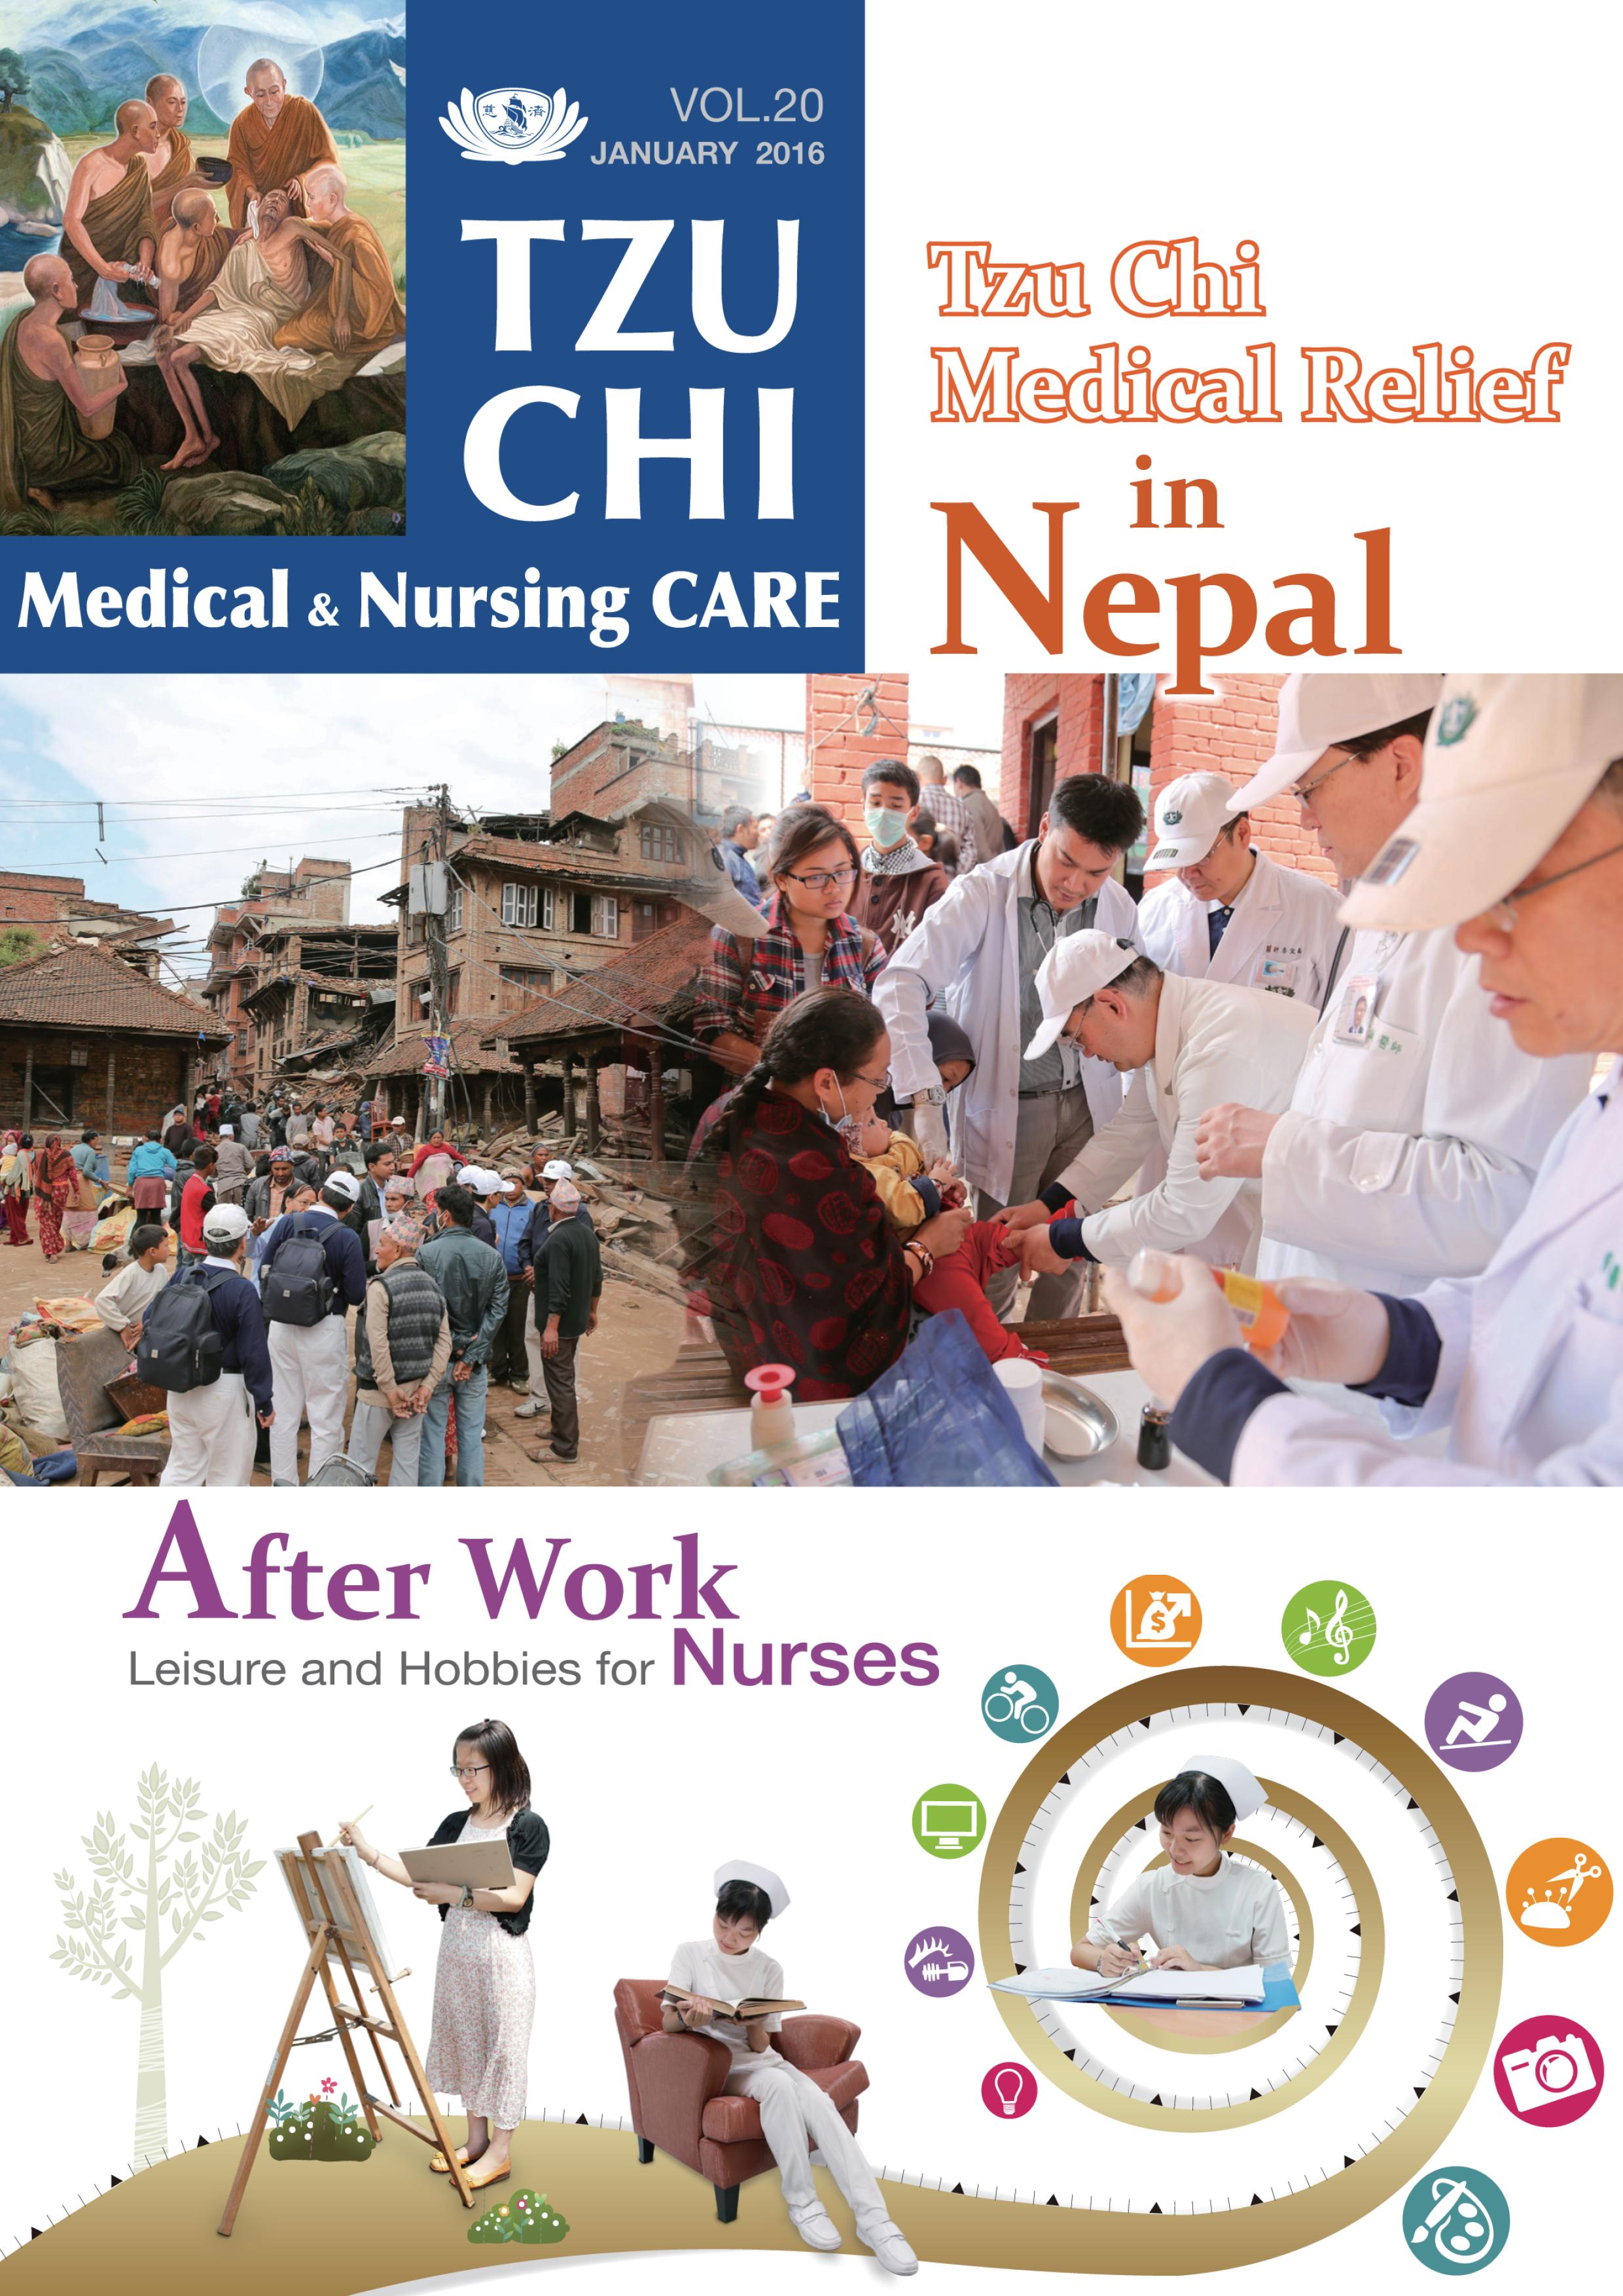 Tzu Chi Medical & Nursing Care Vol.20 